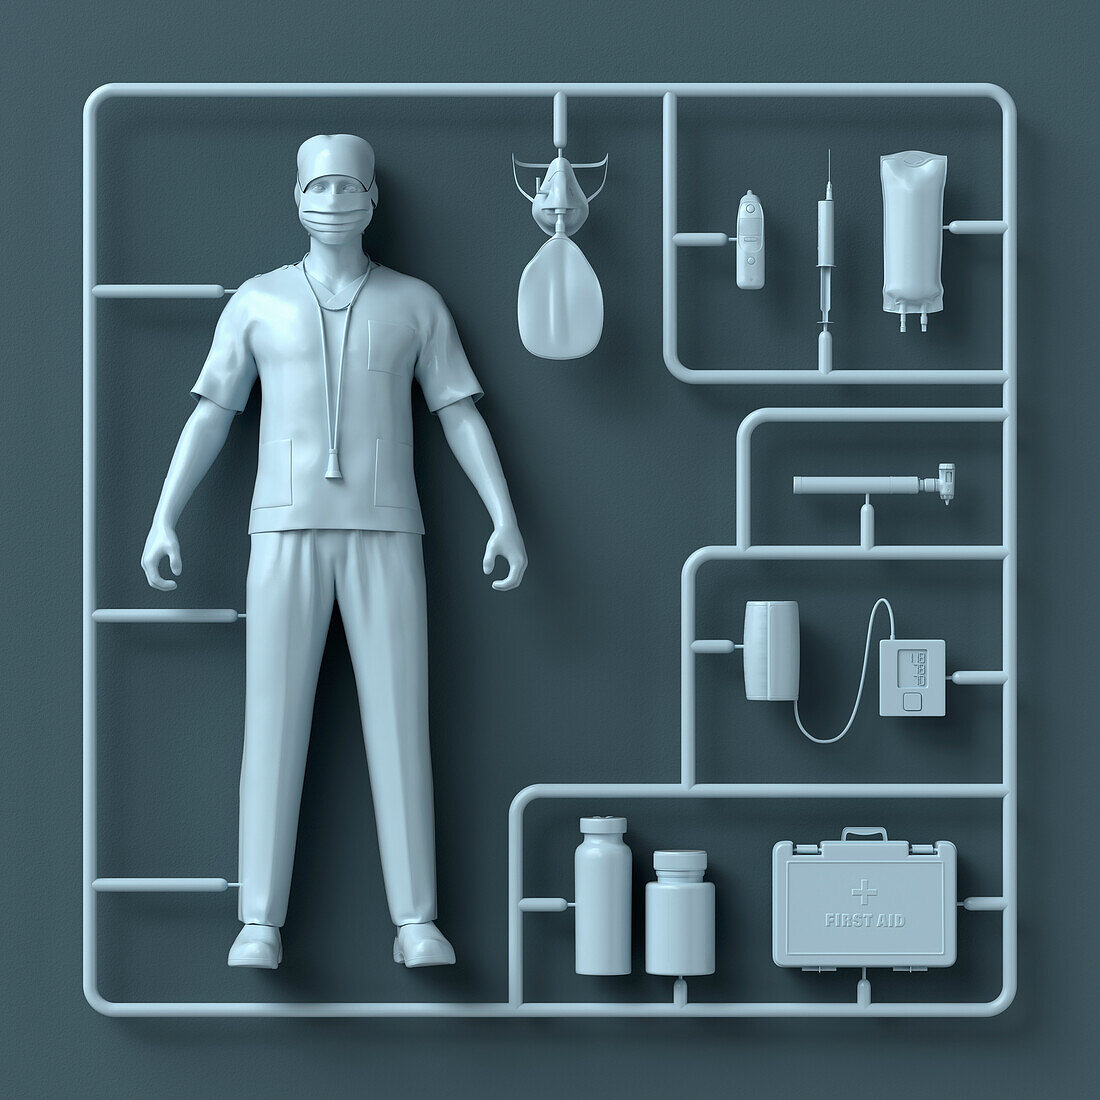 Nurse model assembly kit, illustration